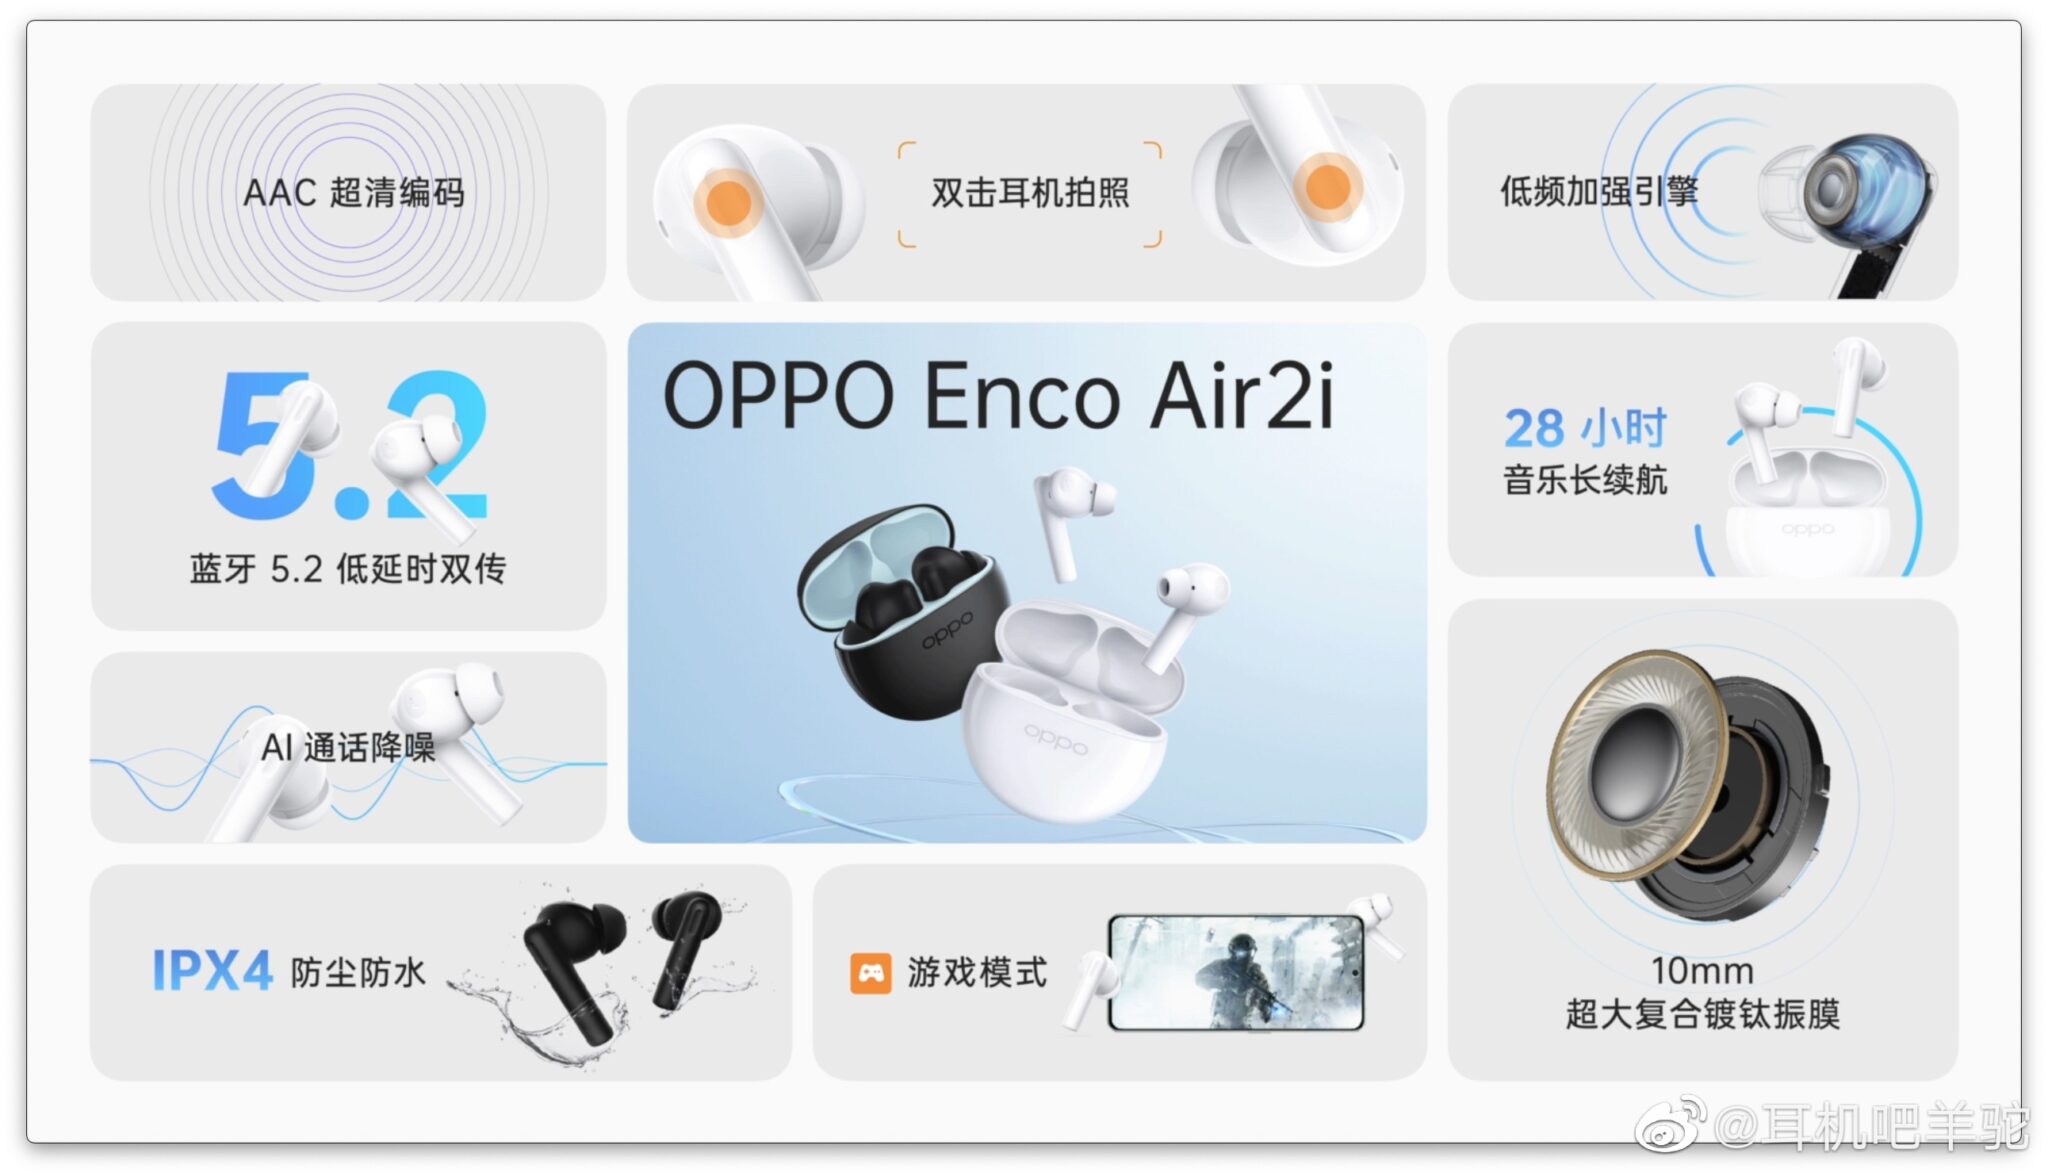 ایرباد اوپو Enco Air 2i معرفی شد